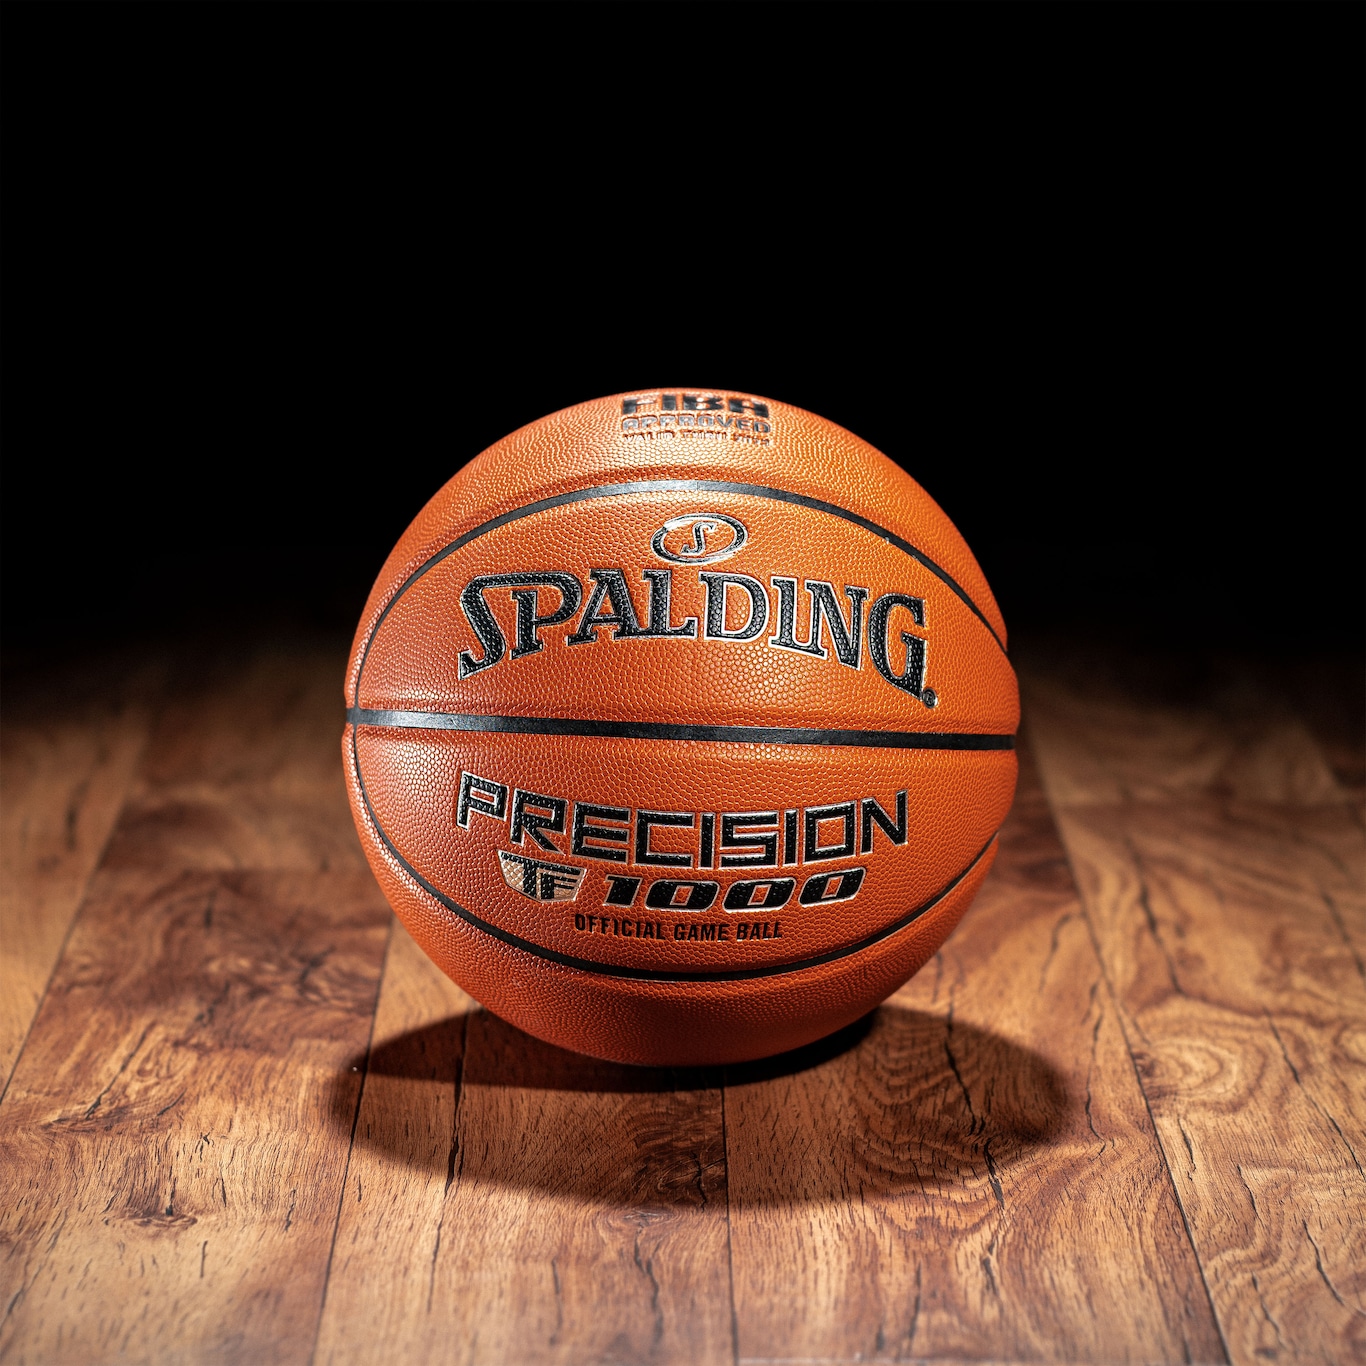 Bola de Basquete Spalding Precision Tf-1000 Indoor